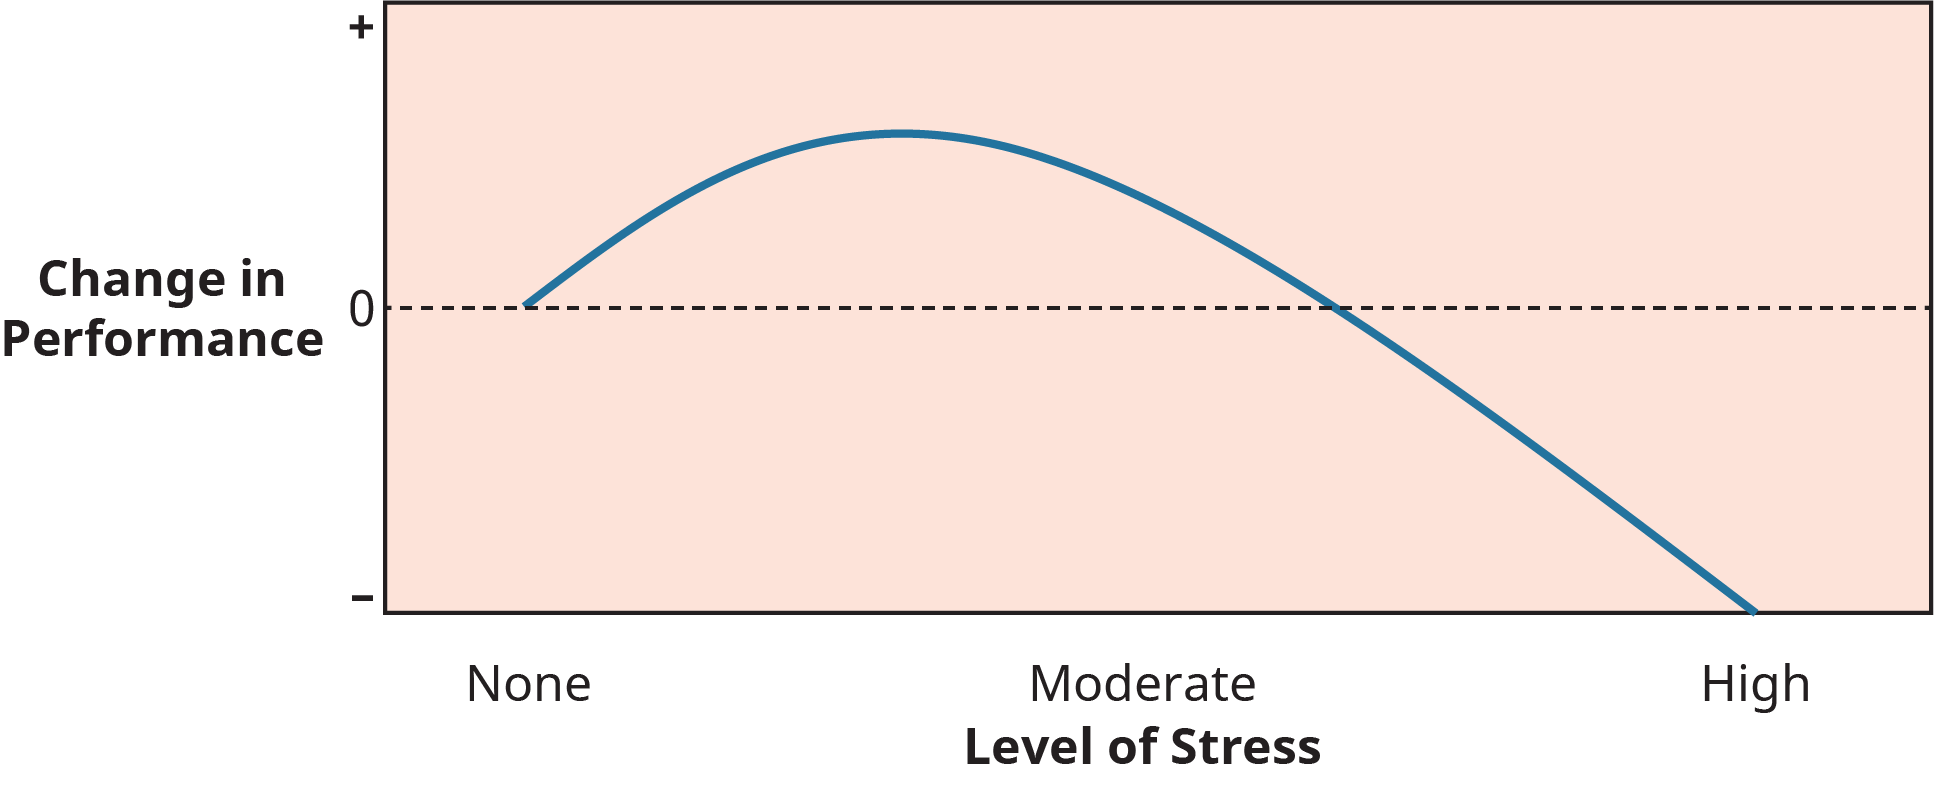 图表描绘了压力与工作绩效之间的关系。